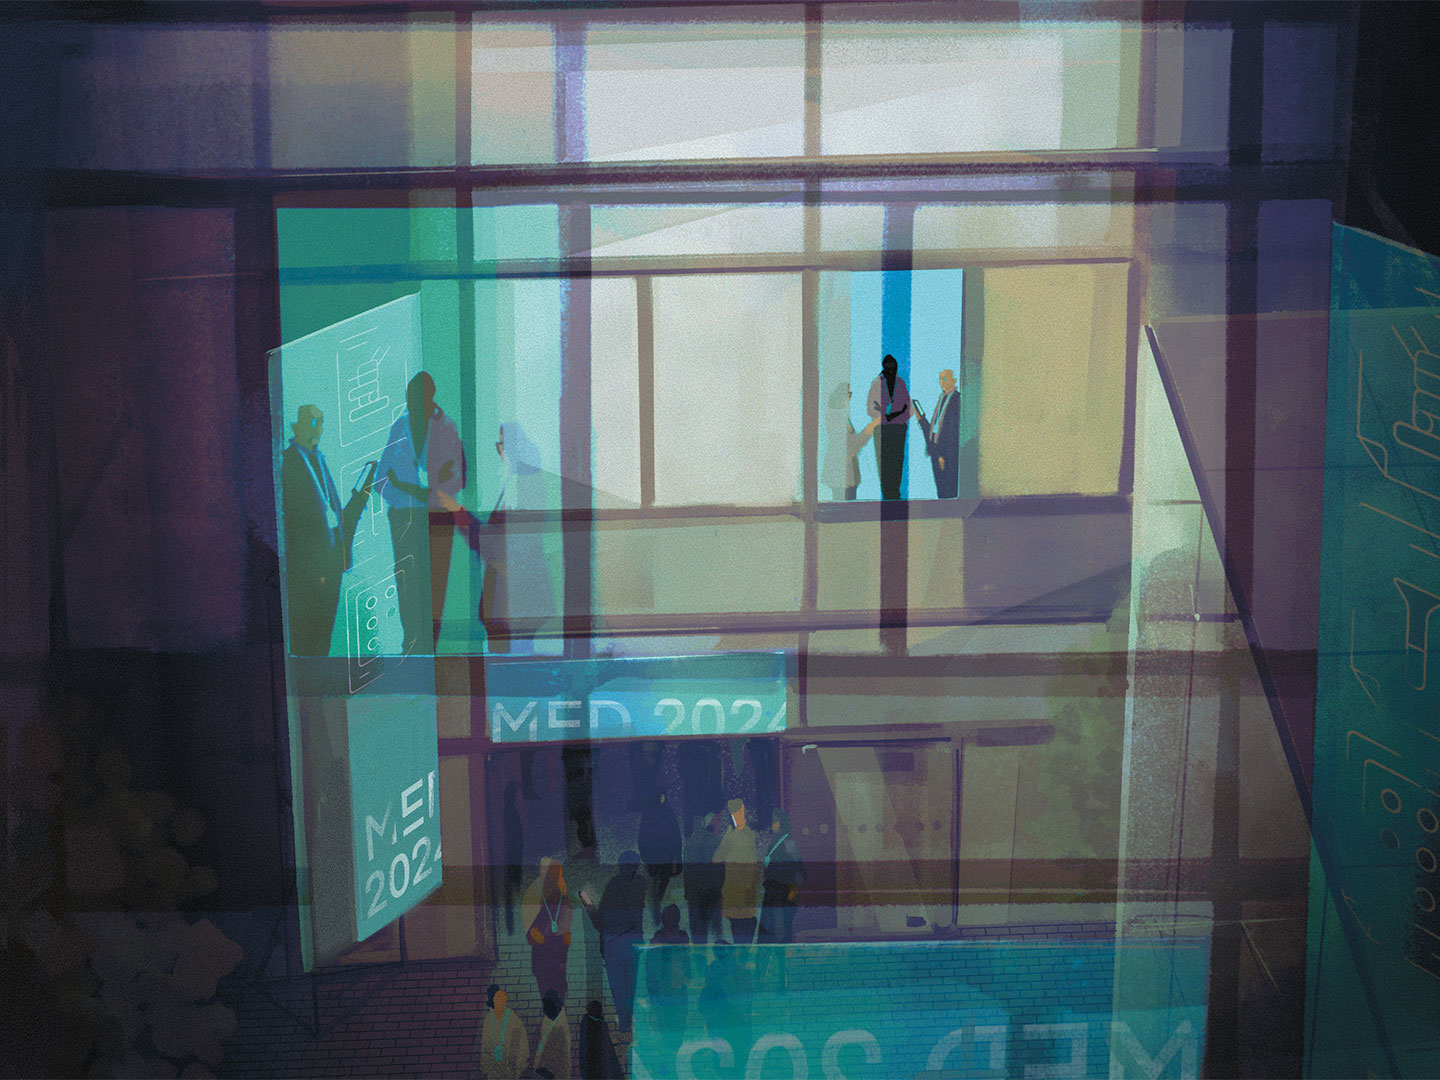 Illustration eines gläsernen Gebäudes, in dem sich Menschen im Gespräch befinden und durch dessen Haupteingang zahlreiche weitere strömen